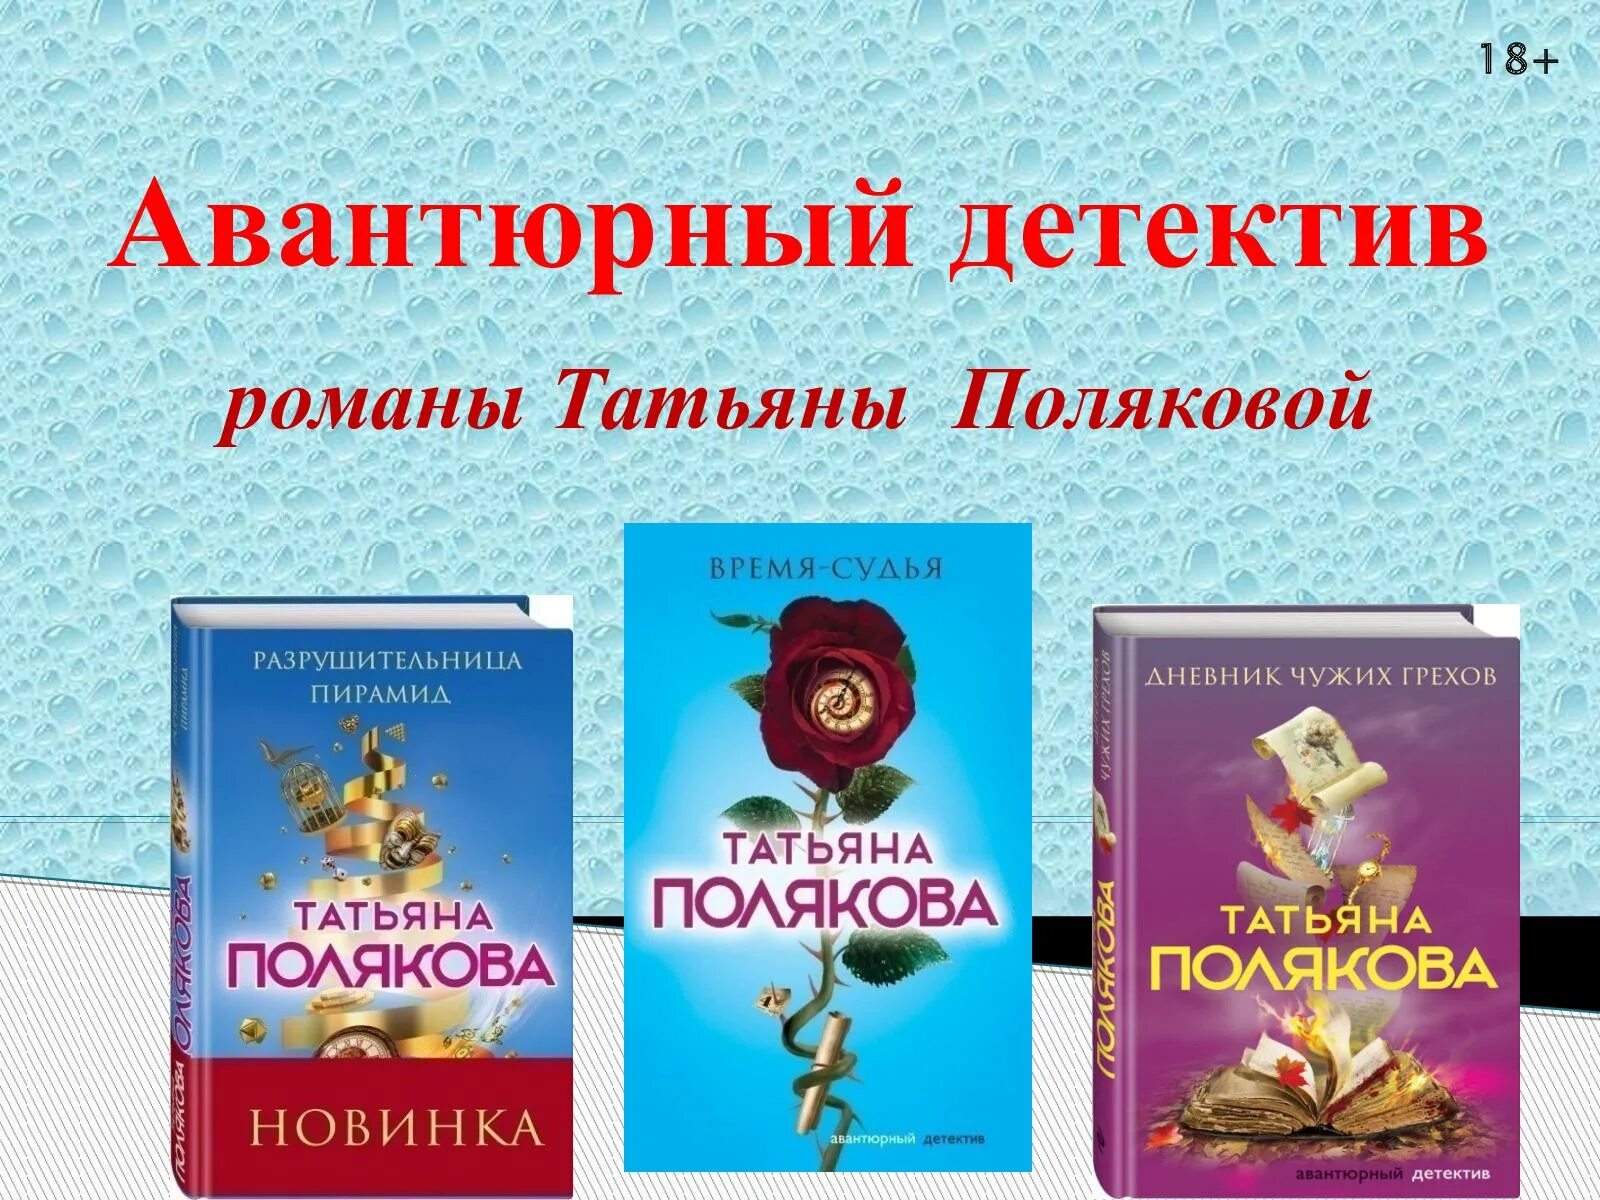 Детектив по роману Поляковой. Обложки книг Поляковой.